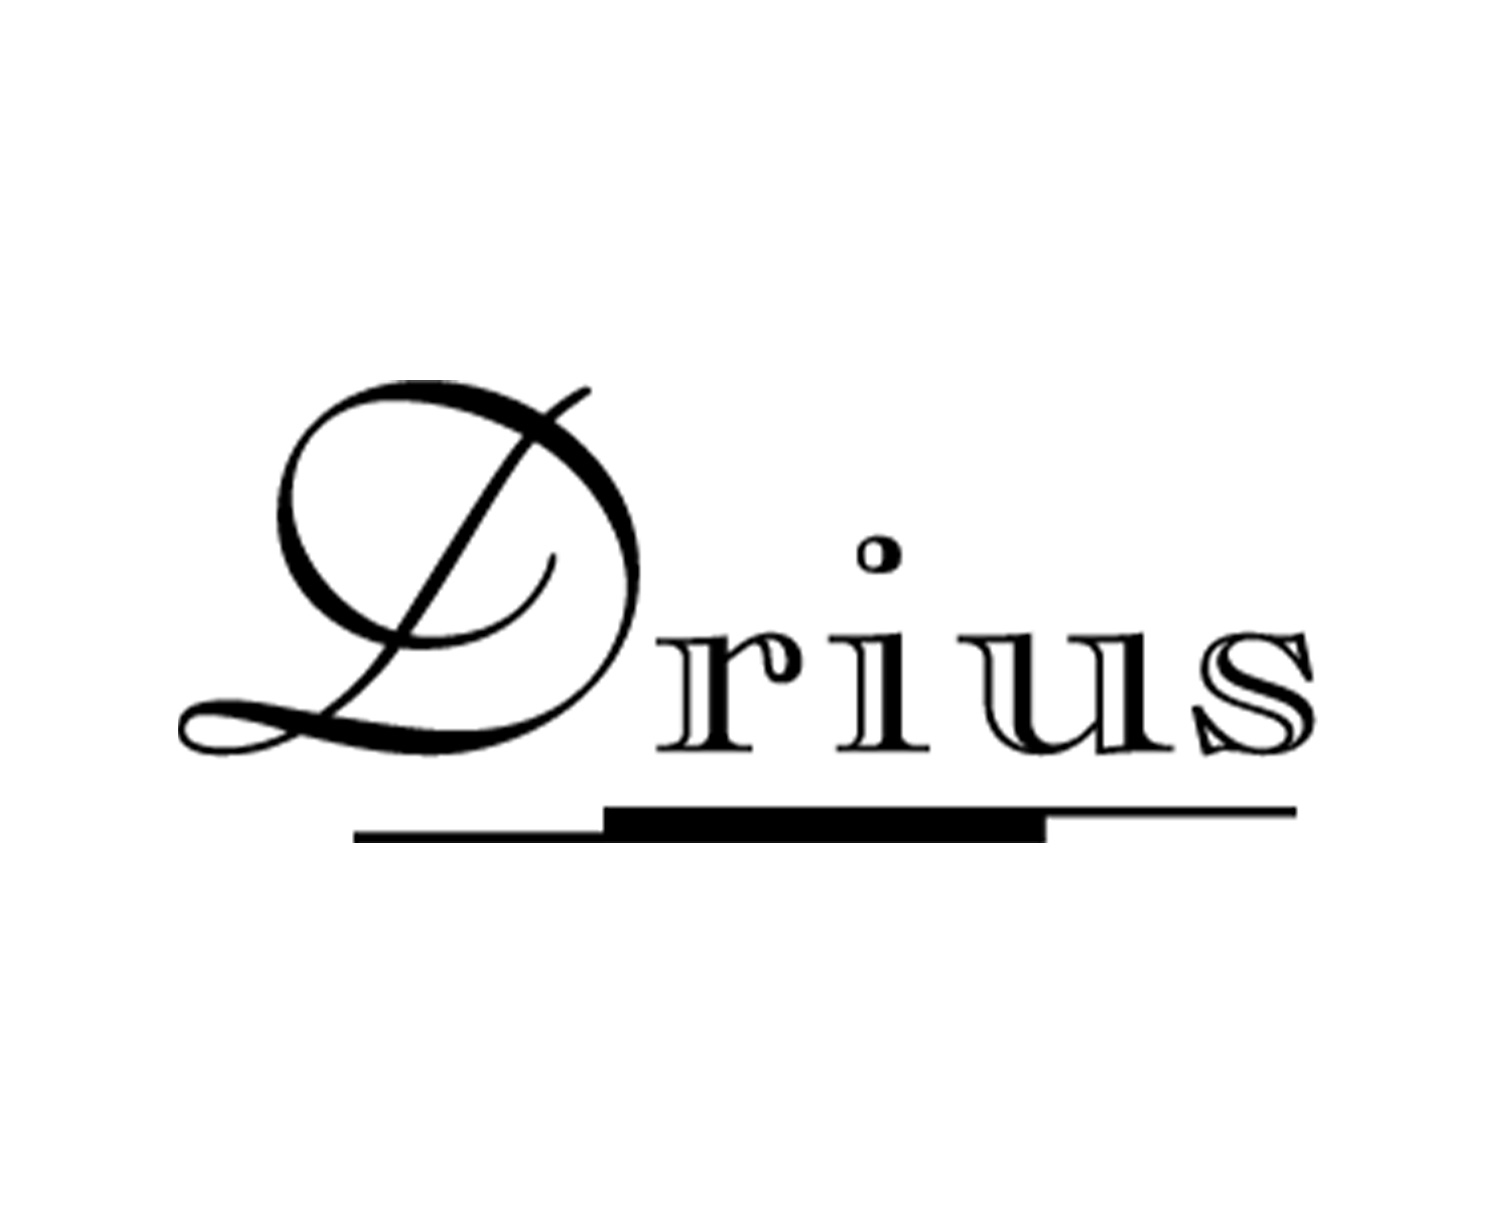 Drius